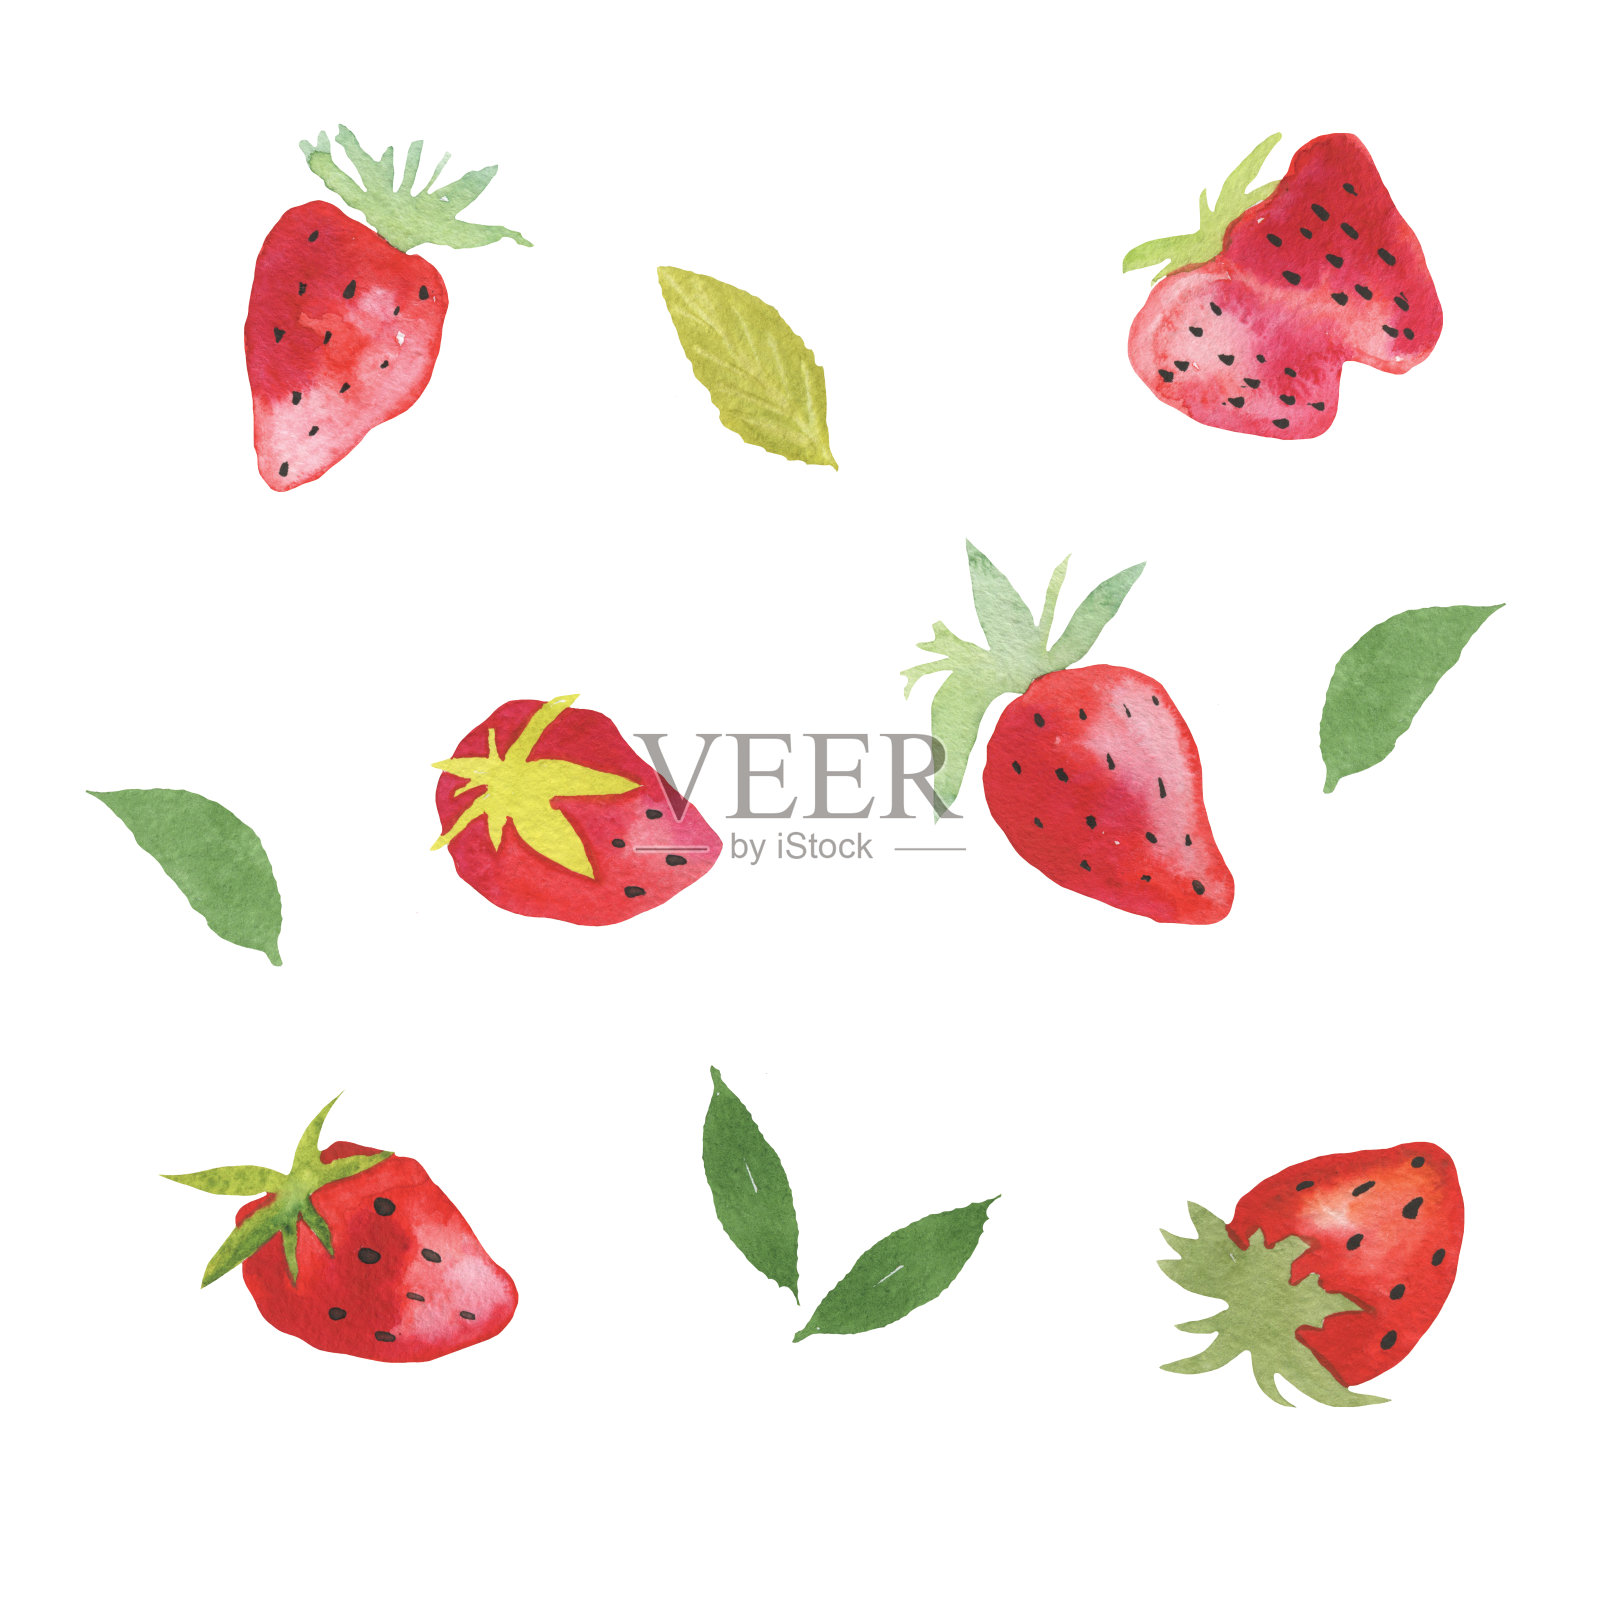 新鲜草莓的水彩画插画图片素材